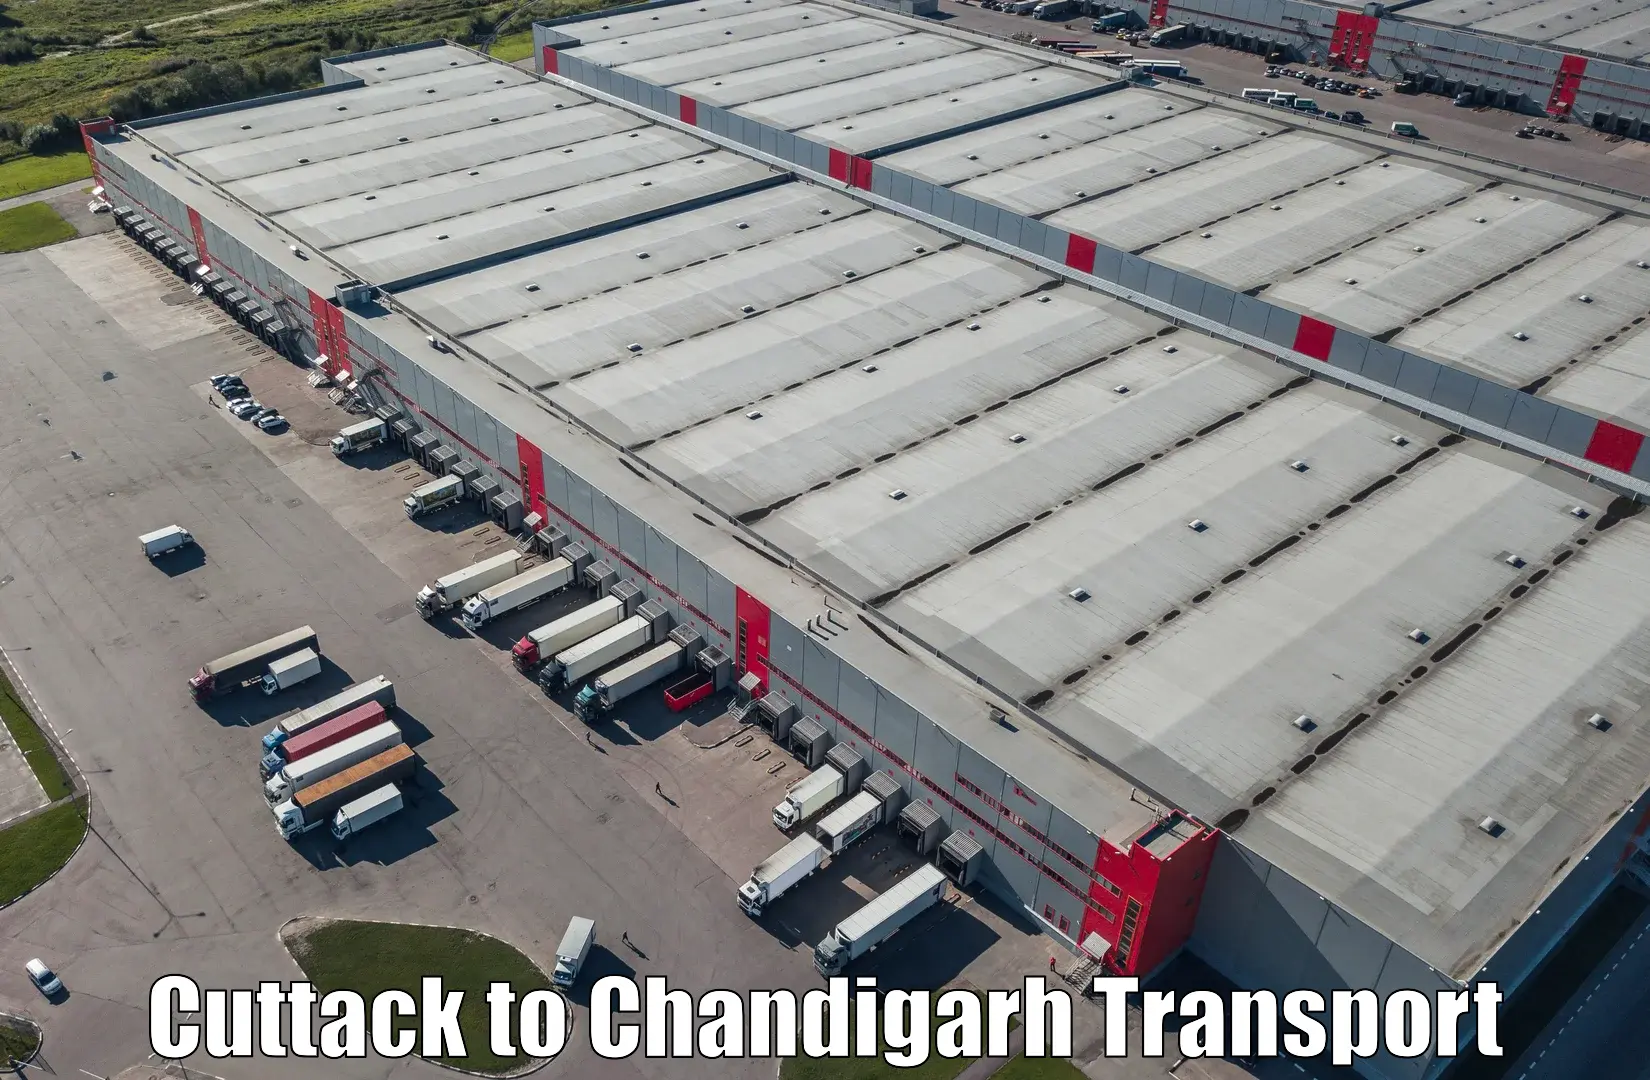 Online transport service Cuttack to Chandigarh